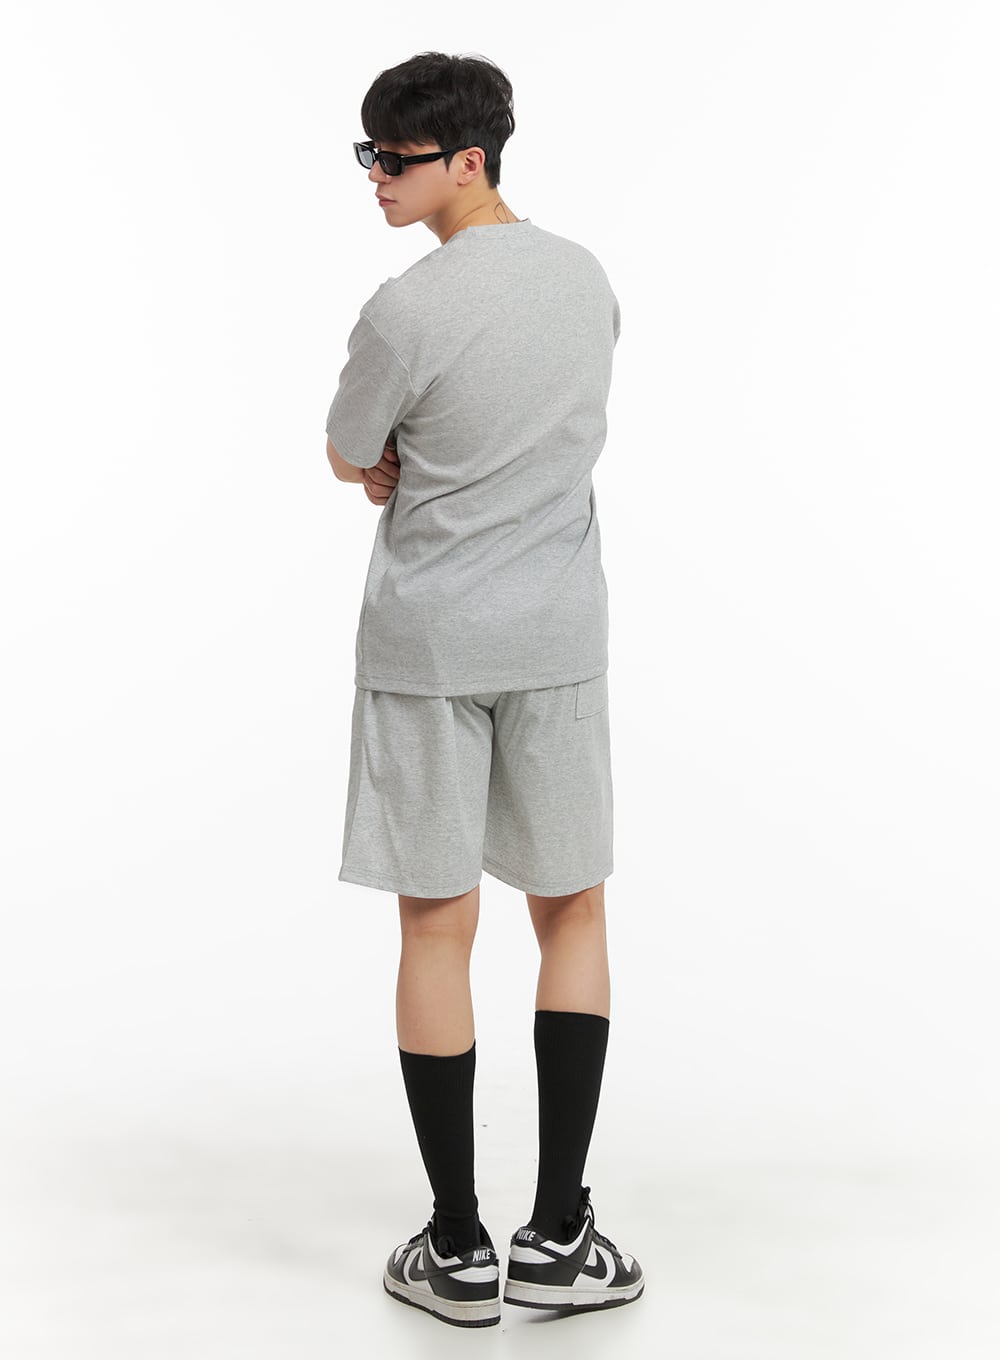 mens-basic-cotton-shorts-ia402